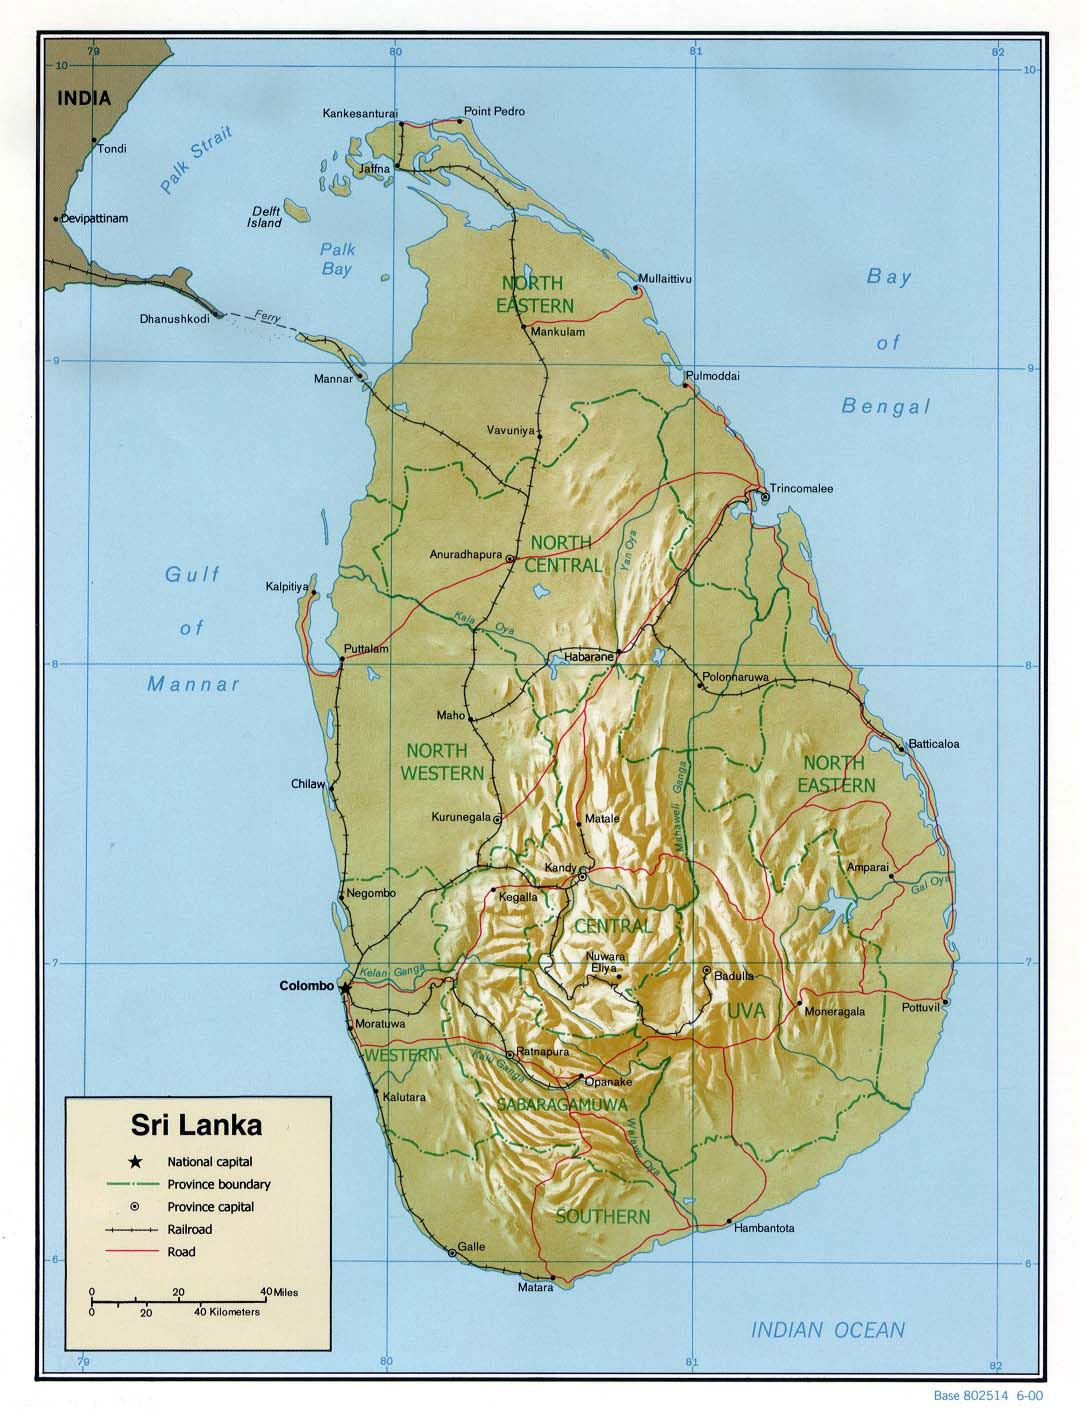 Detallado mapa político y administrativo de Sri Lanka con relieve, carreteras, ferrocarriles y principales ciudades - 2000